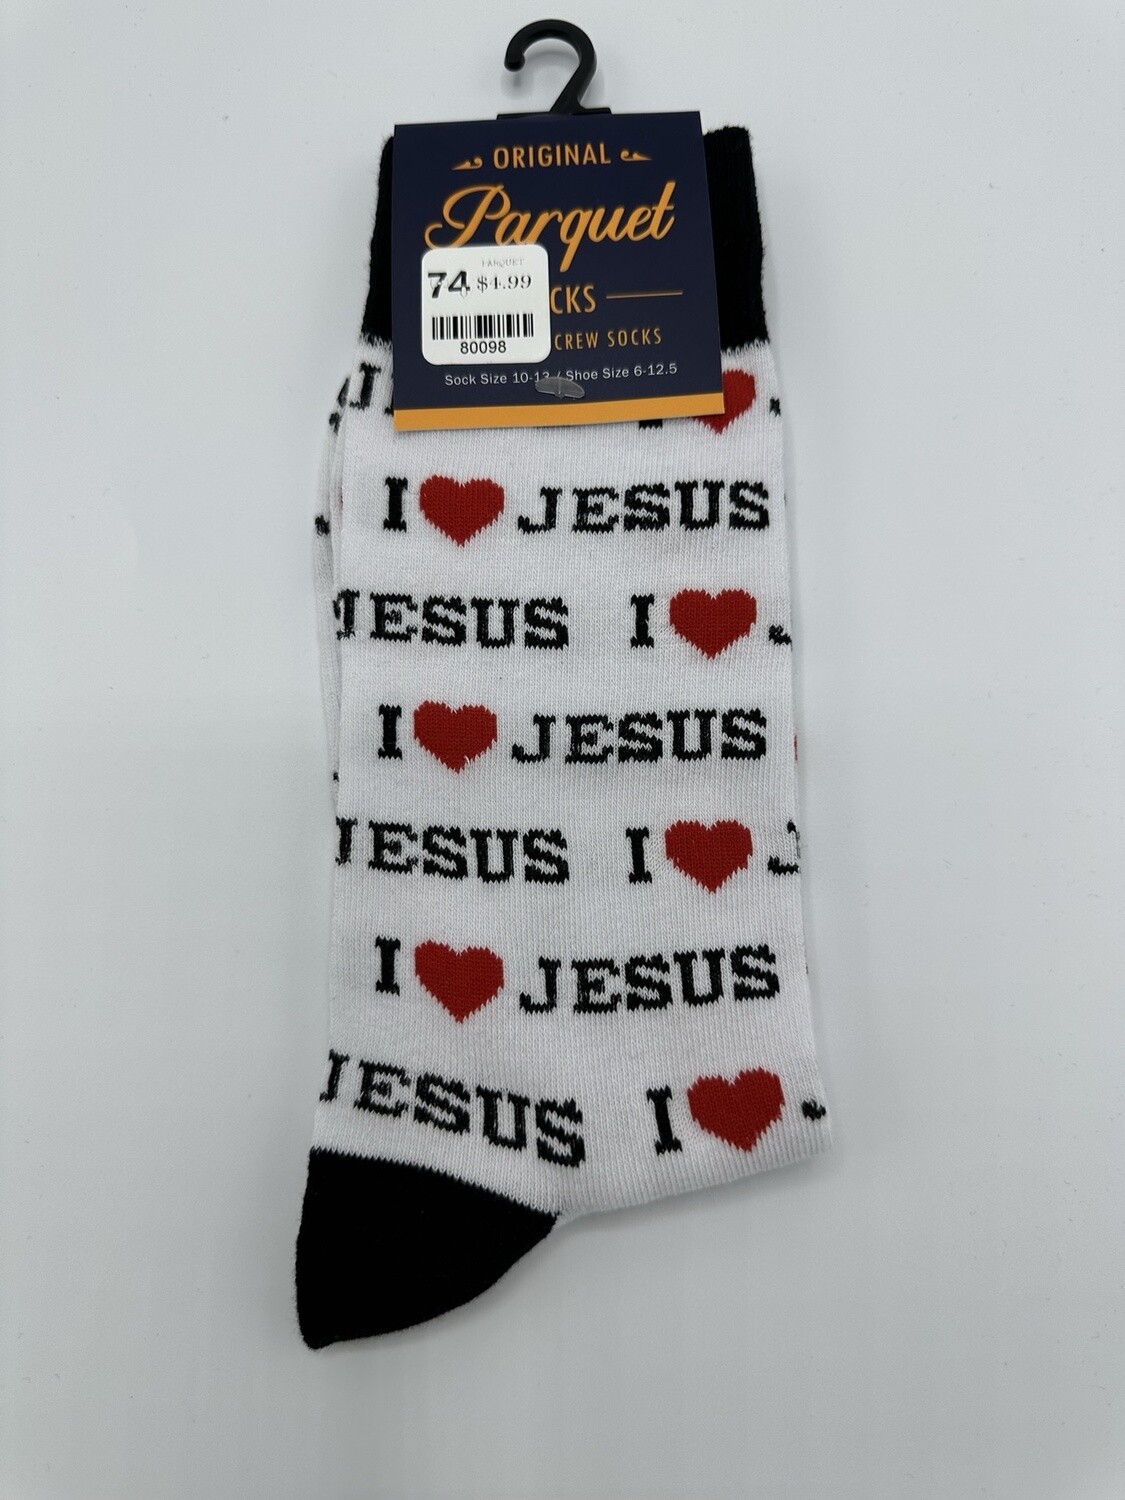 I Love Jesus - sock size 10-13